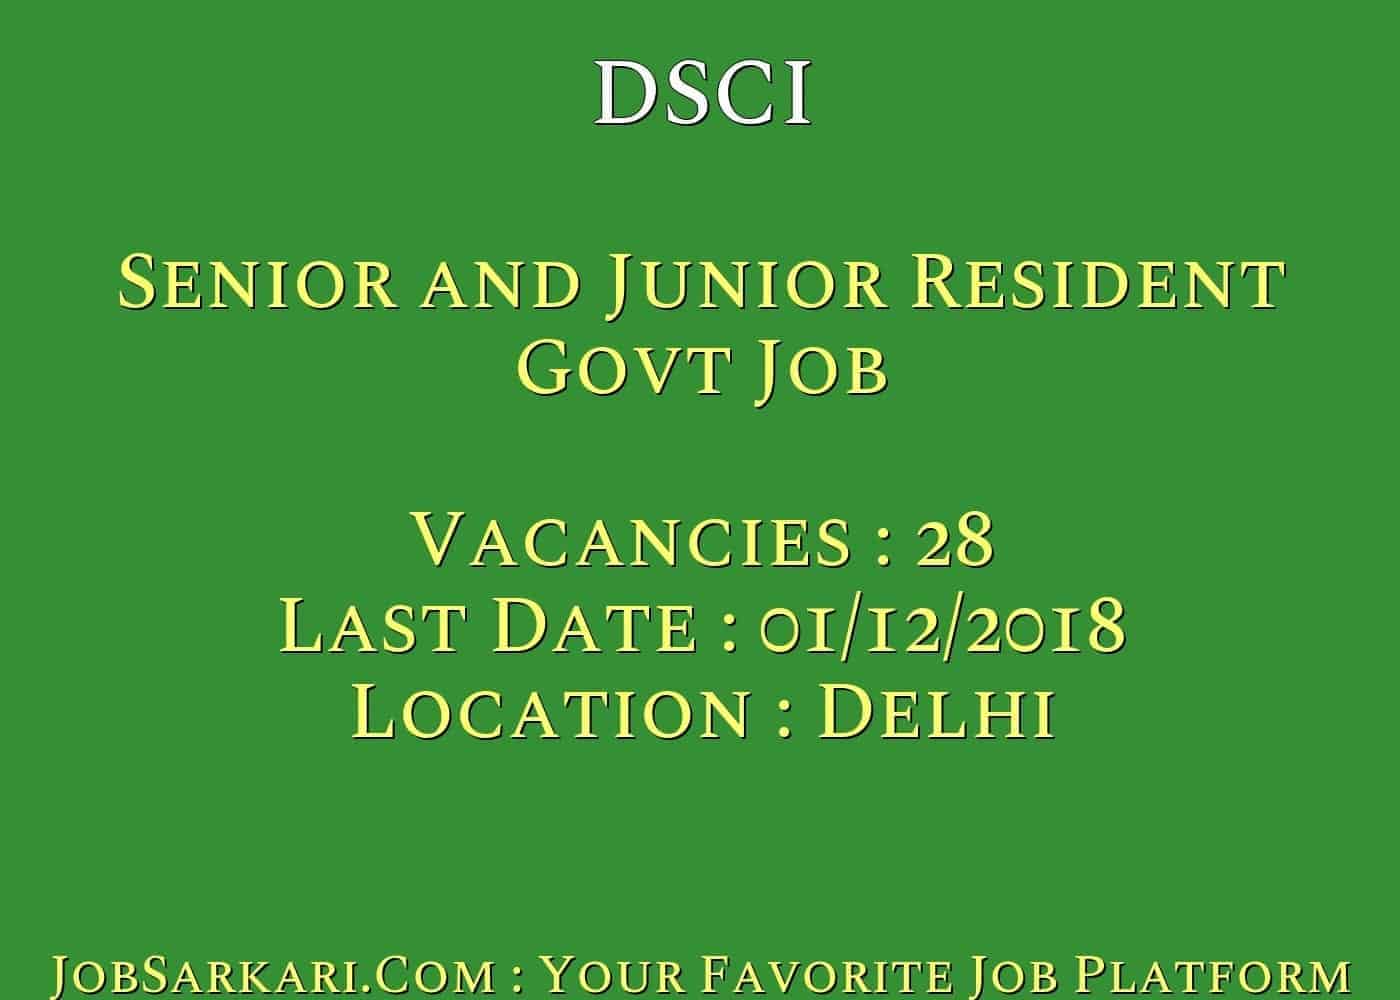 DSCI Recruitment 2018 for Senior and Junior Resident Govt Job